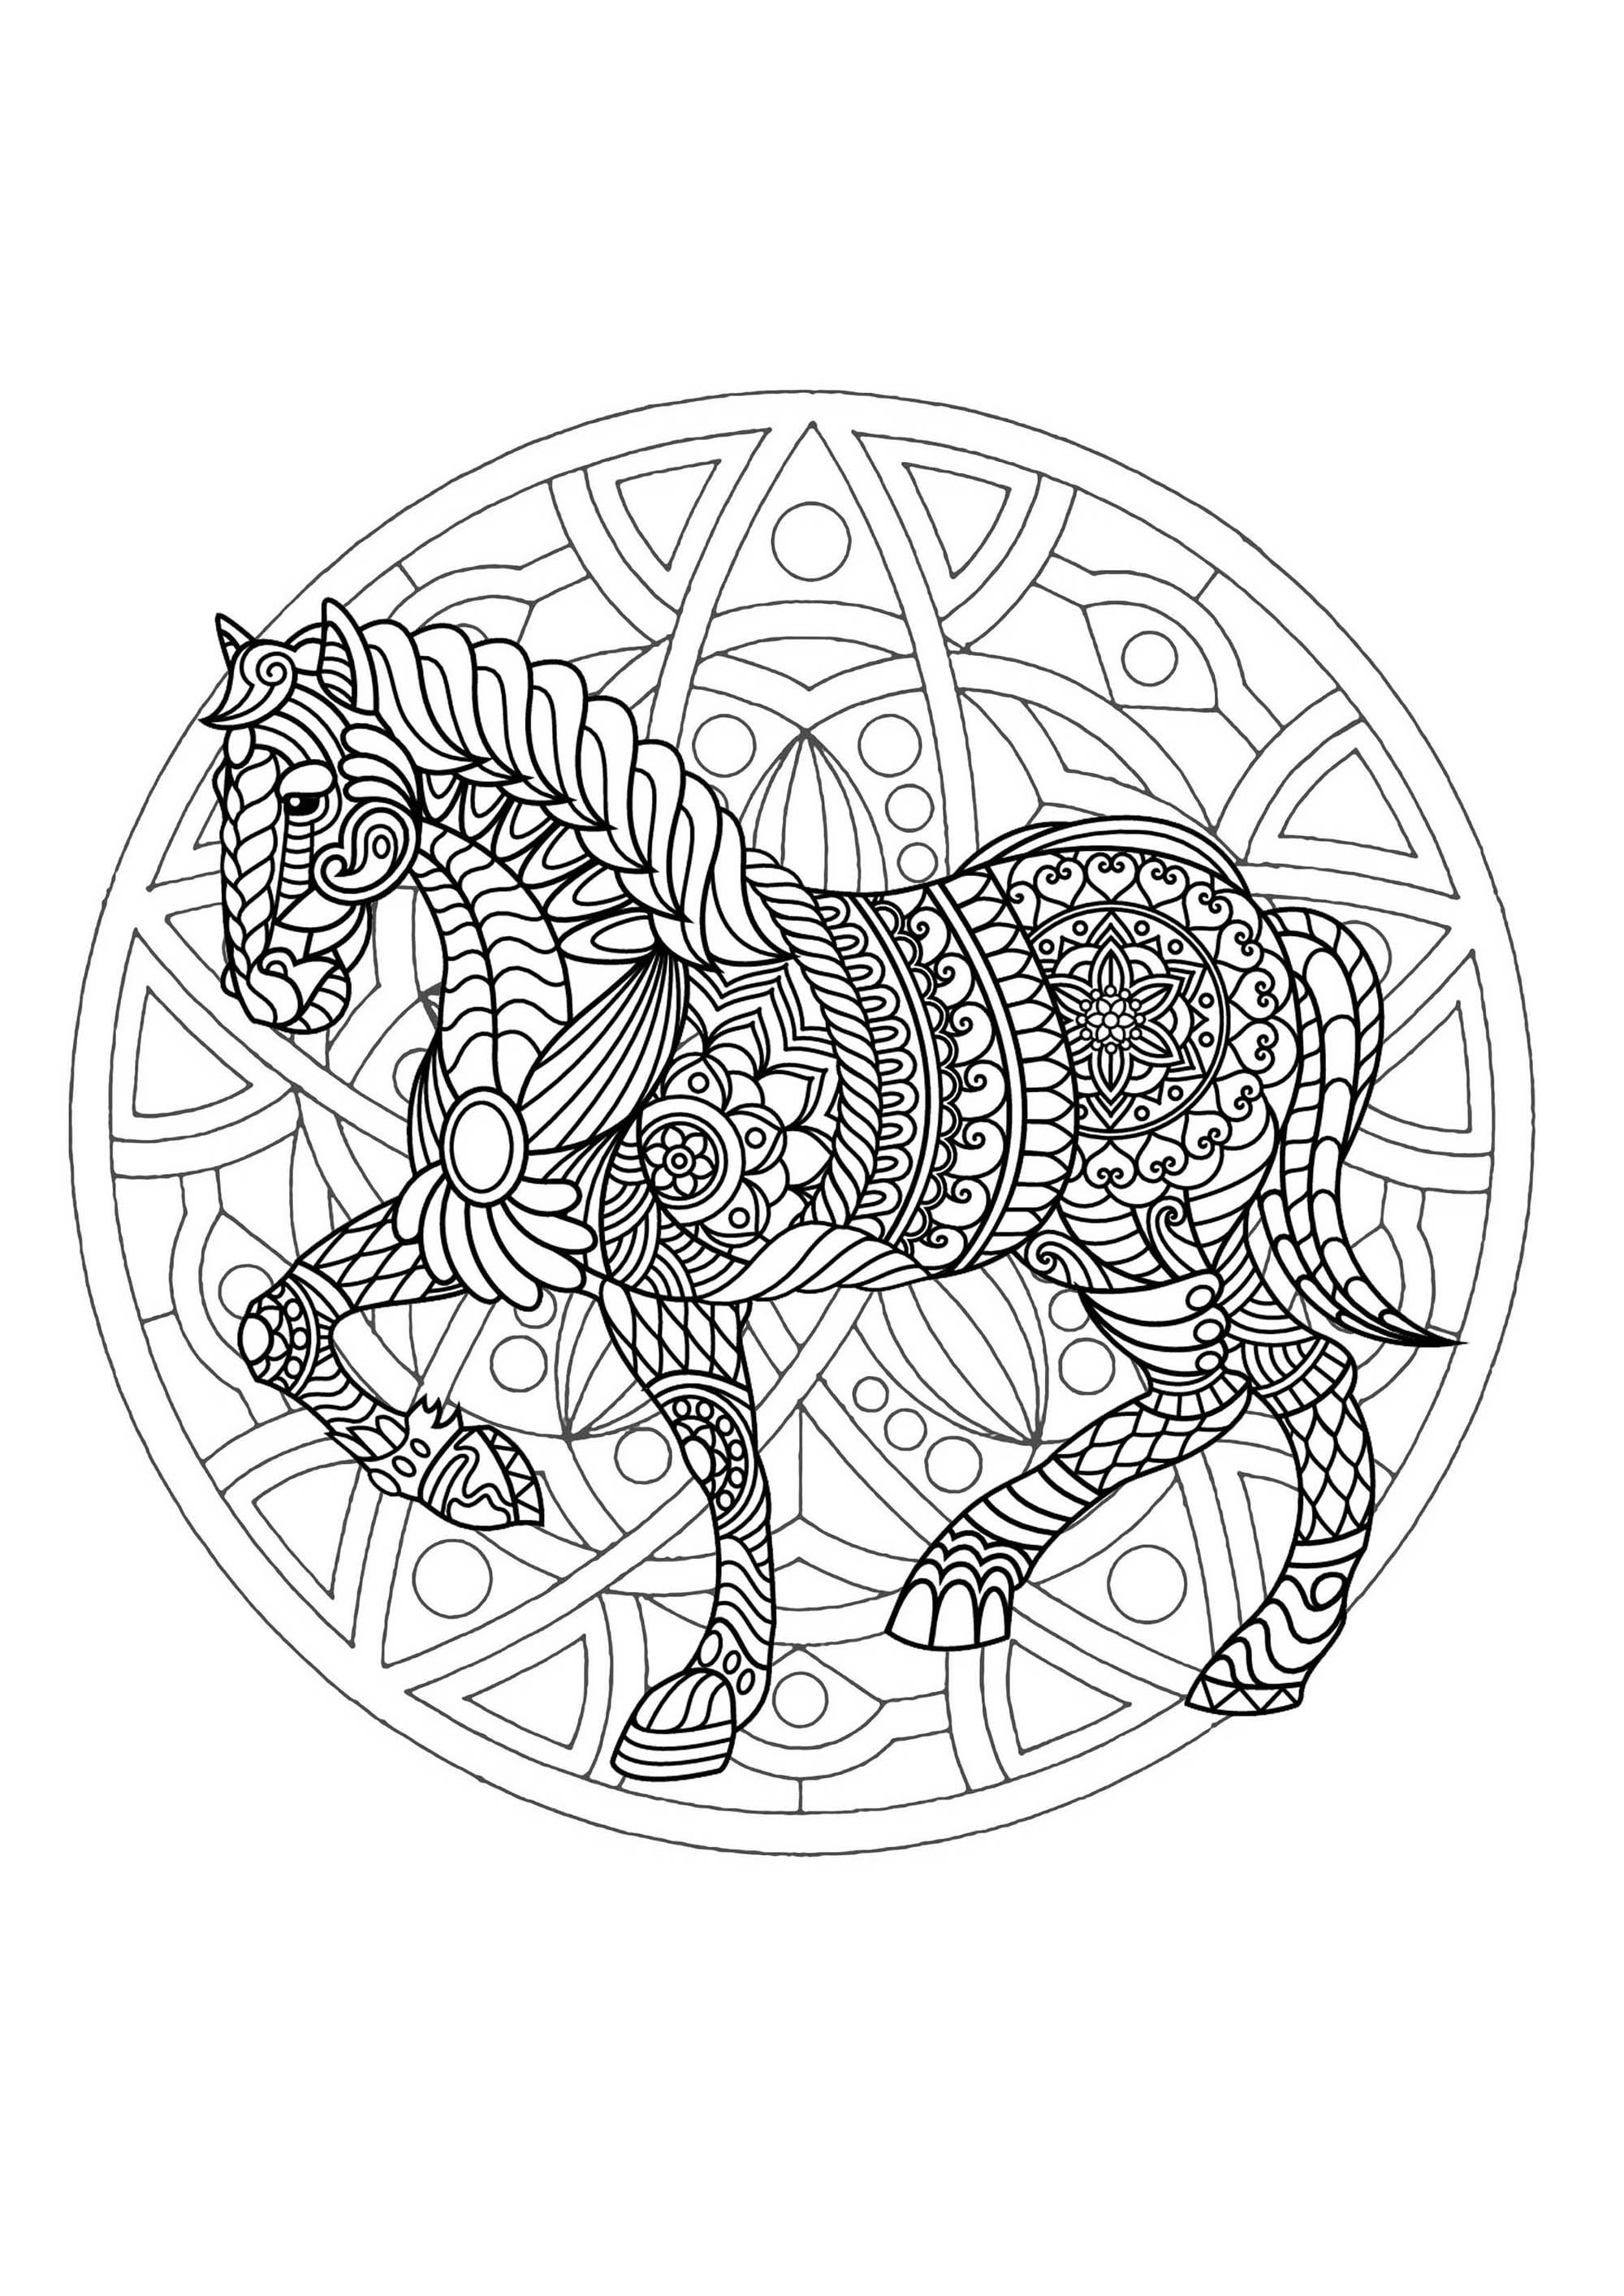 Mandala para colorear con magnífico Caballo y sencillos motivos geométricos de fondo